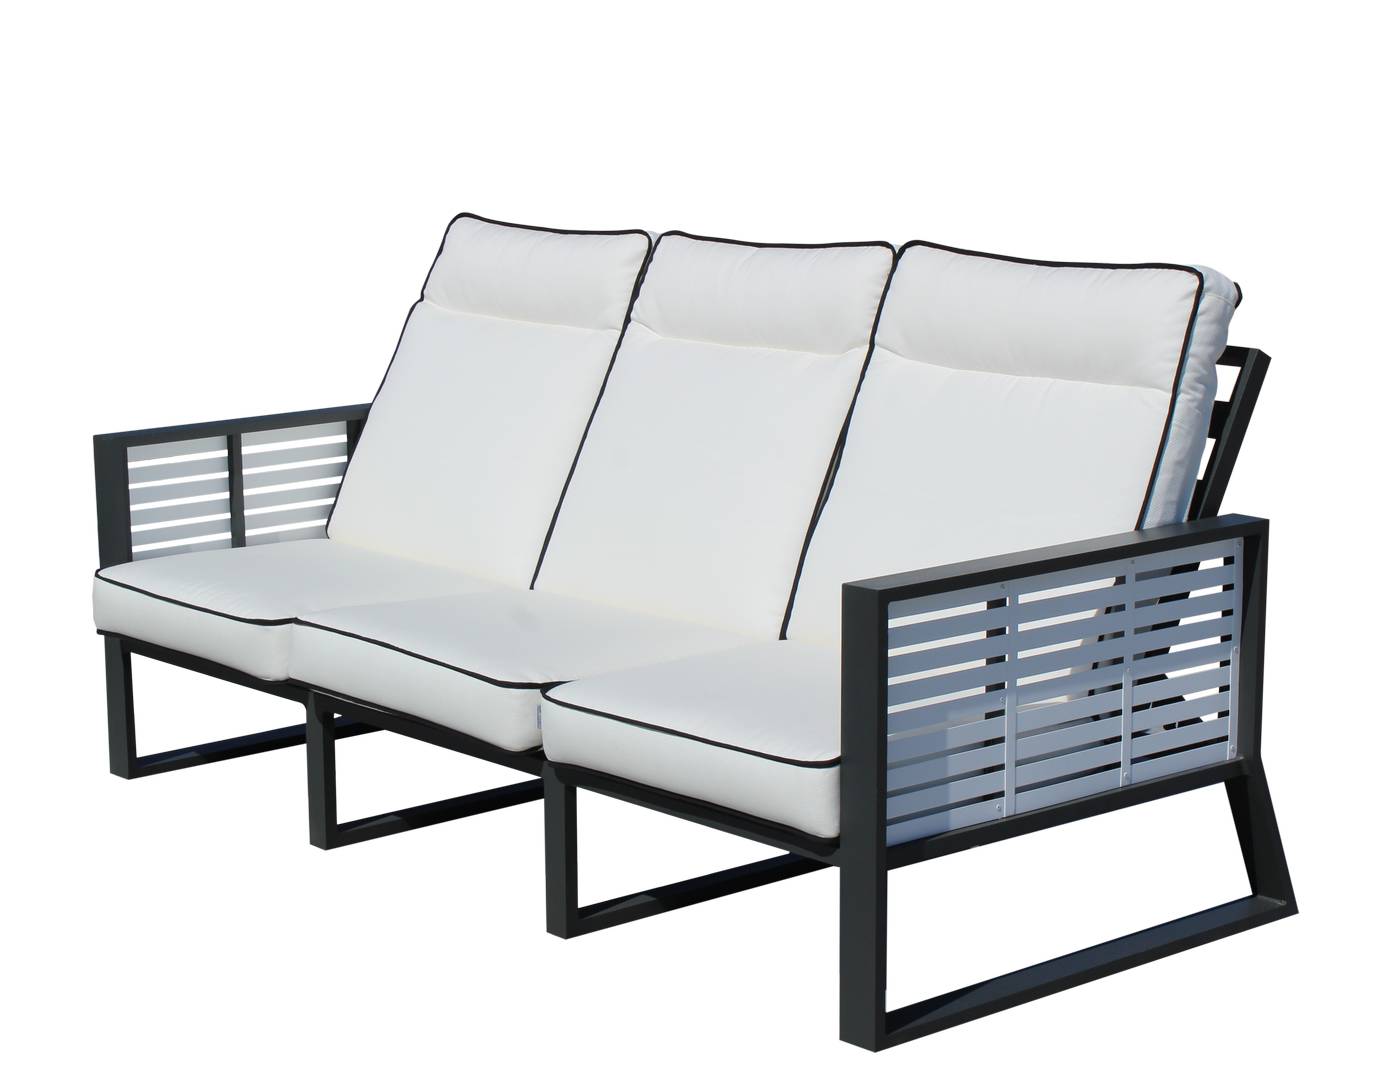 Exclusivo sofá 3 plazas reclinable de alumnio bicolor, con cojines gran confort desenfundables.